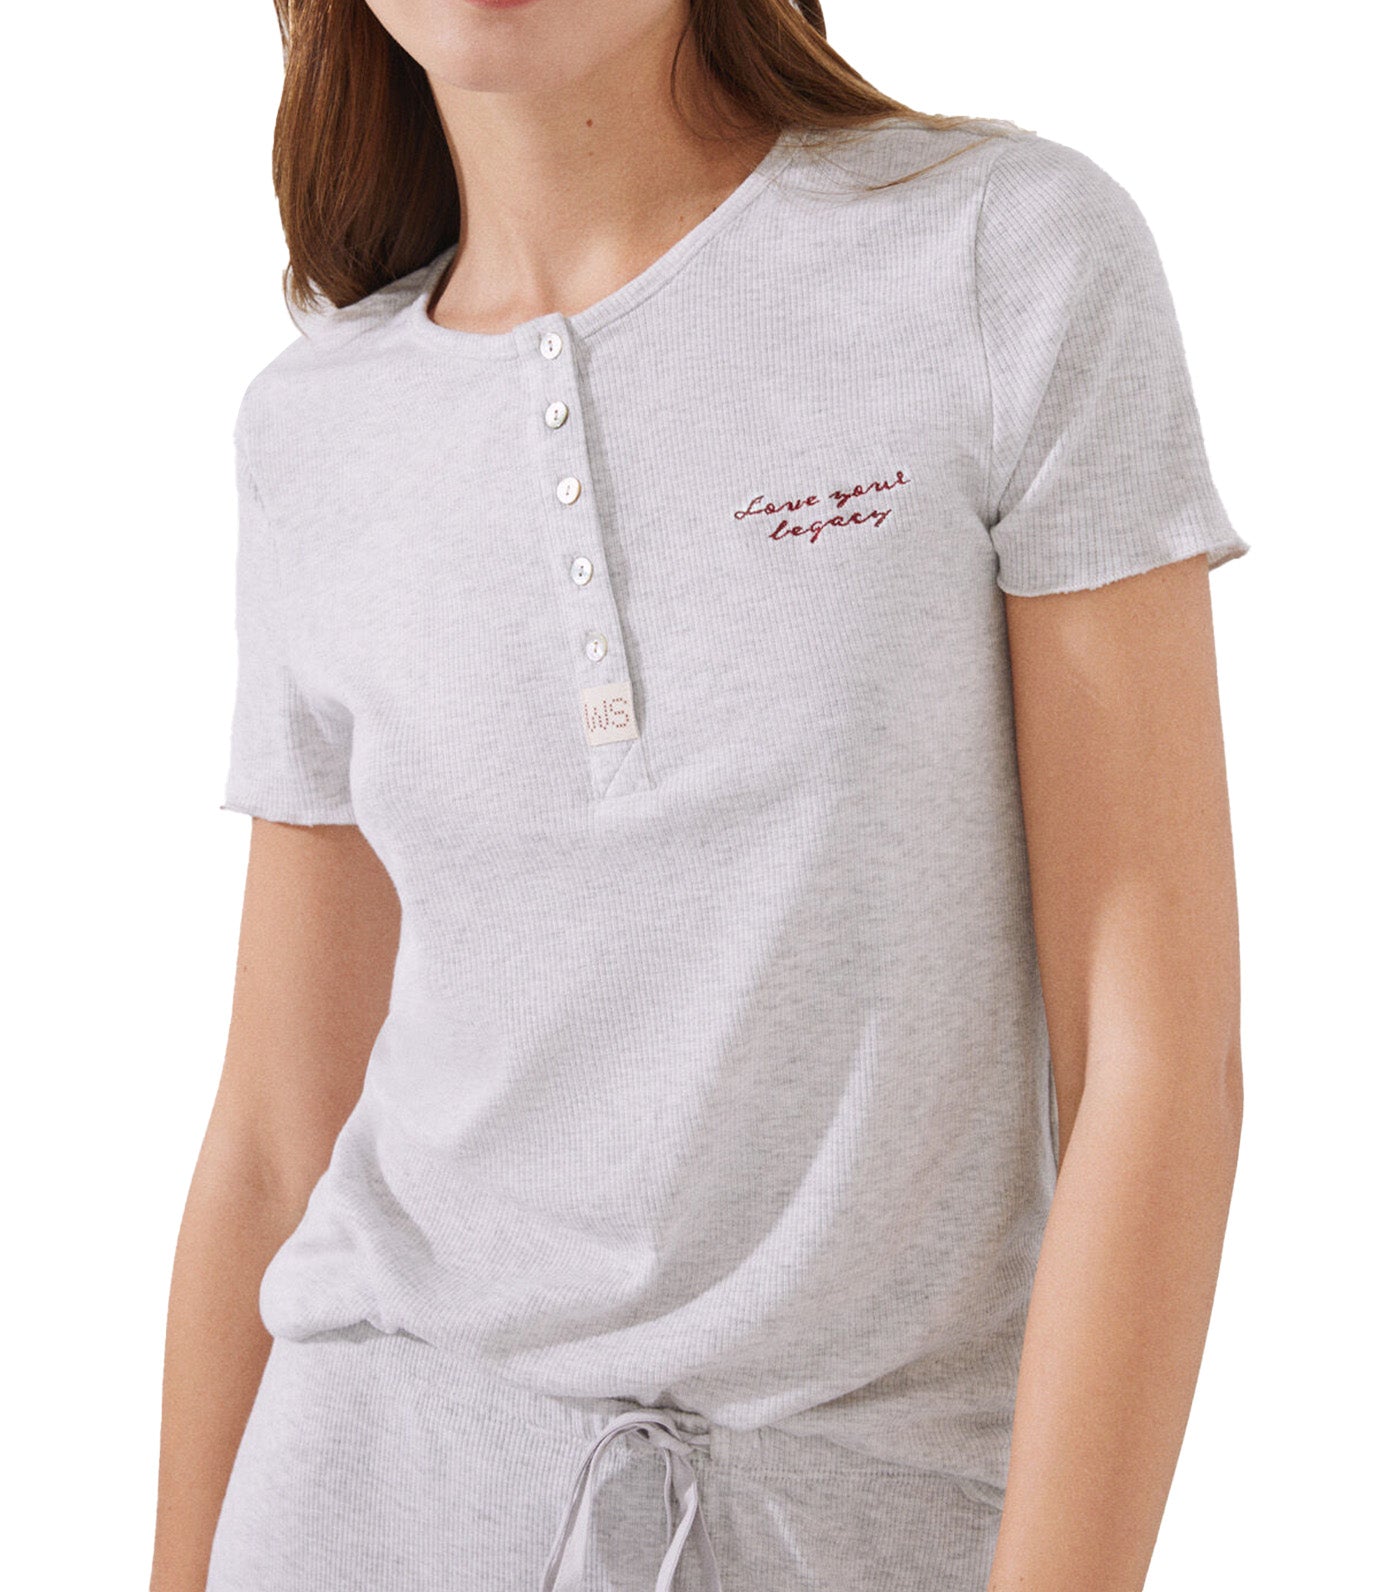 Long Ribbed Pajamas with Short Sleeves Set Gray